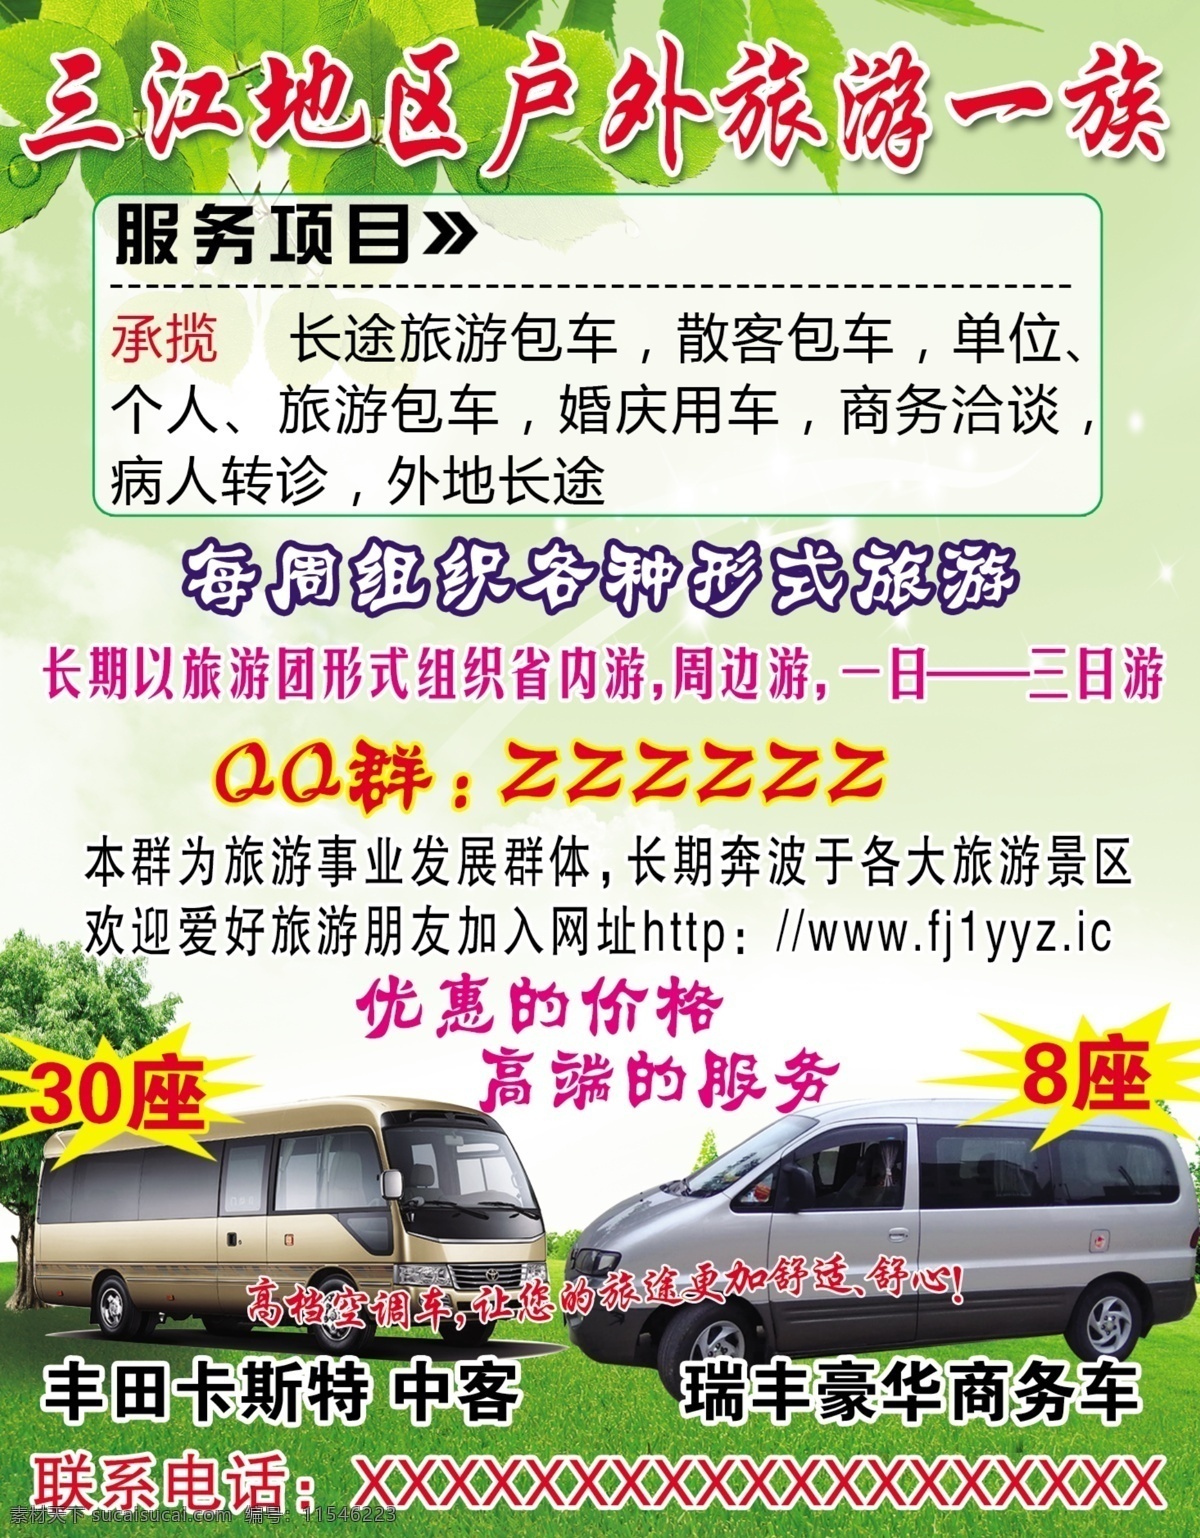 旅游包车 旅游广告 面包车 旅游包车广告 户外旅游 绿色背景 白色